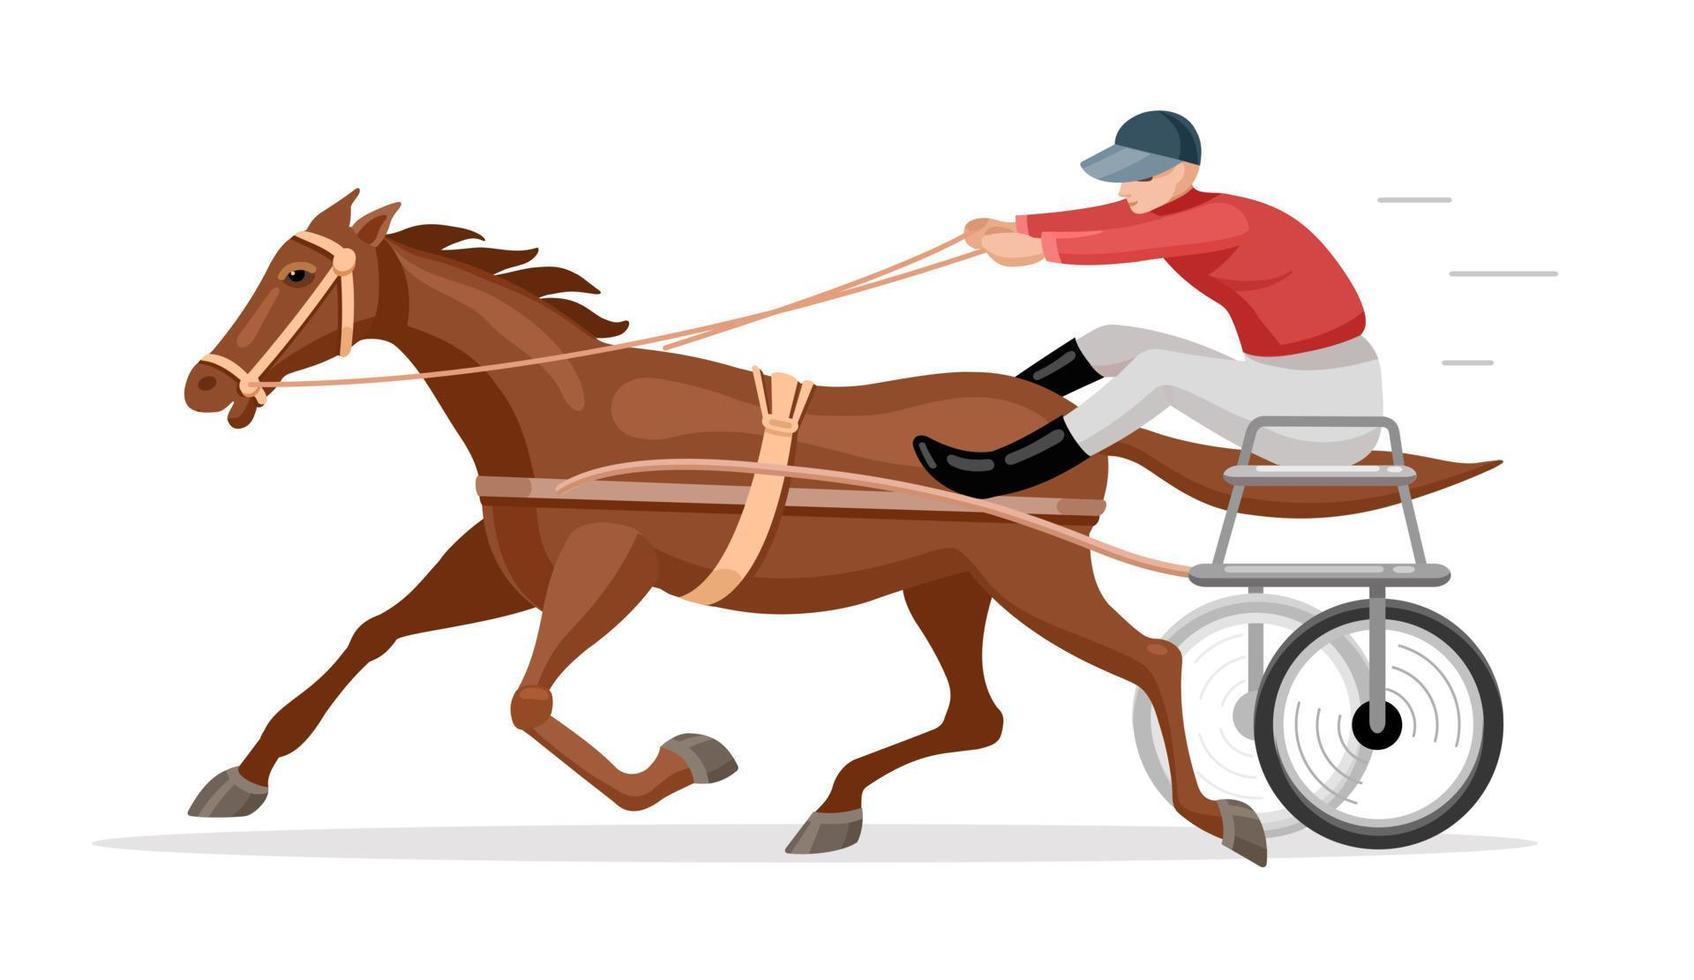 jóquei e cavalo de corrida. corrida de cavalos ou bicicleta de corrida. ilustração em vetor plana.